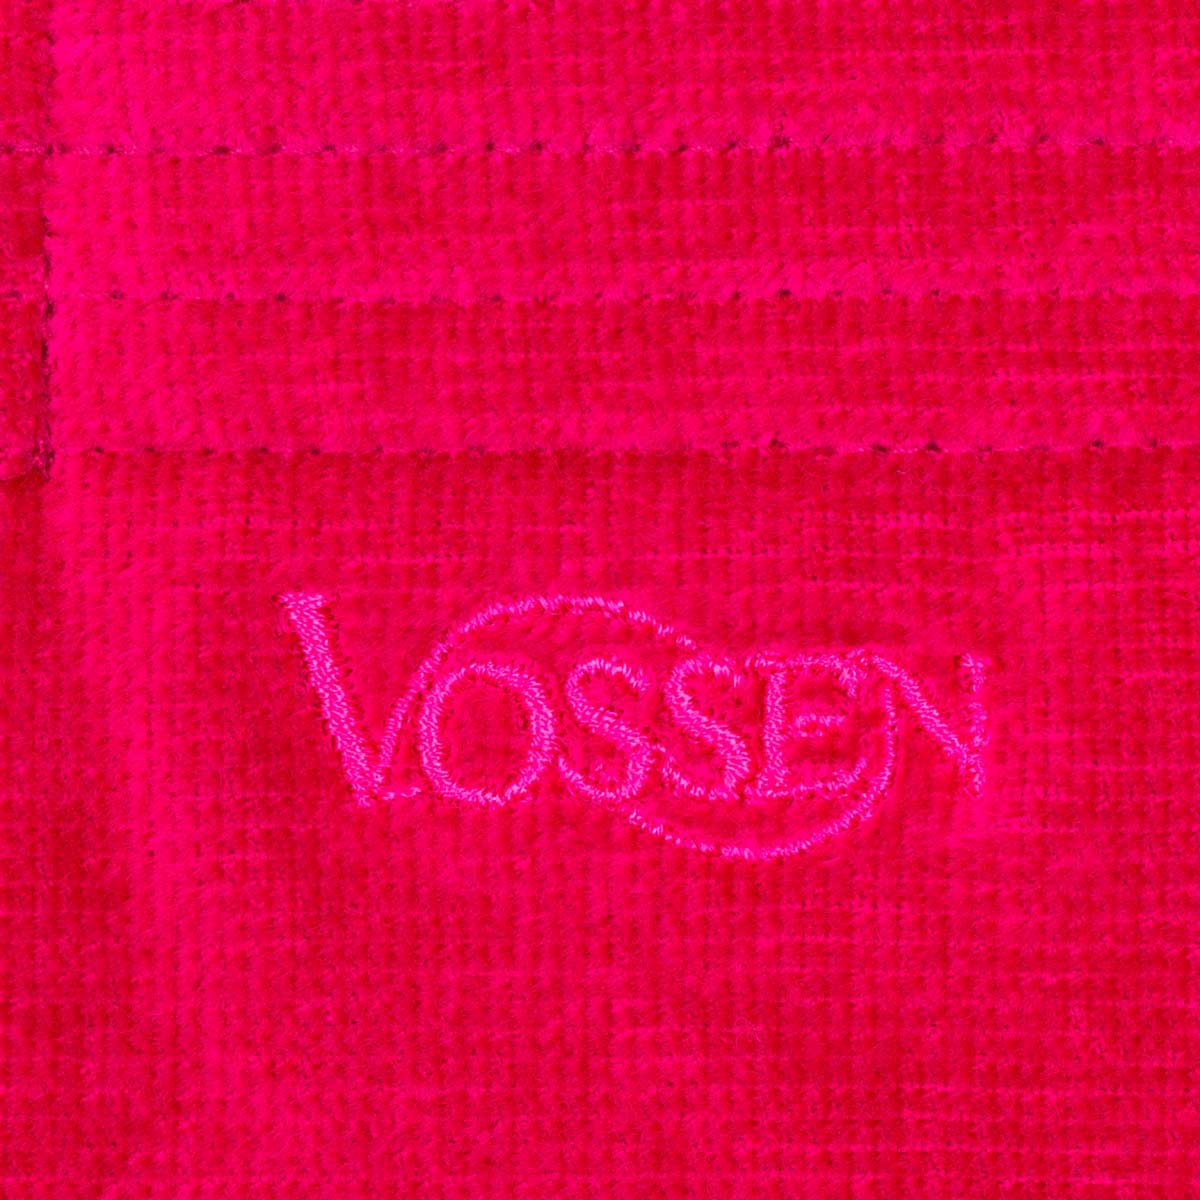 Халат велюровый с капюшоном Vossen Texas размер M, фуксия Vossen 7990 05112 3770 4248 M - фото 4